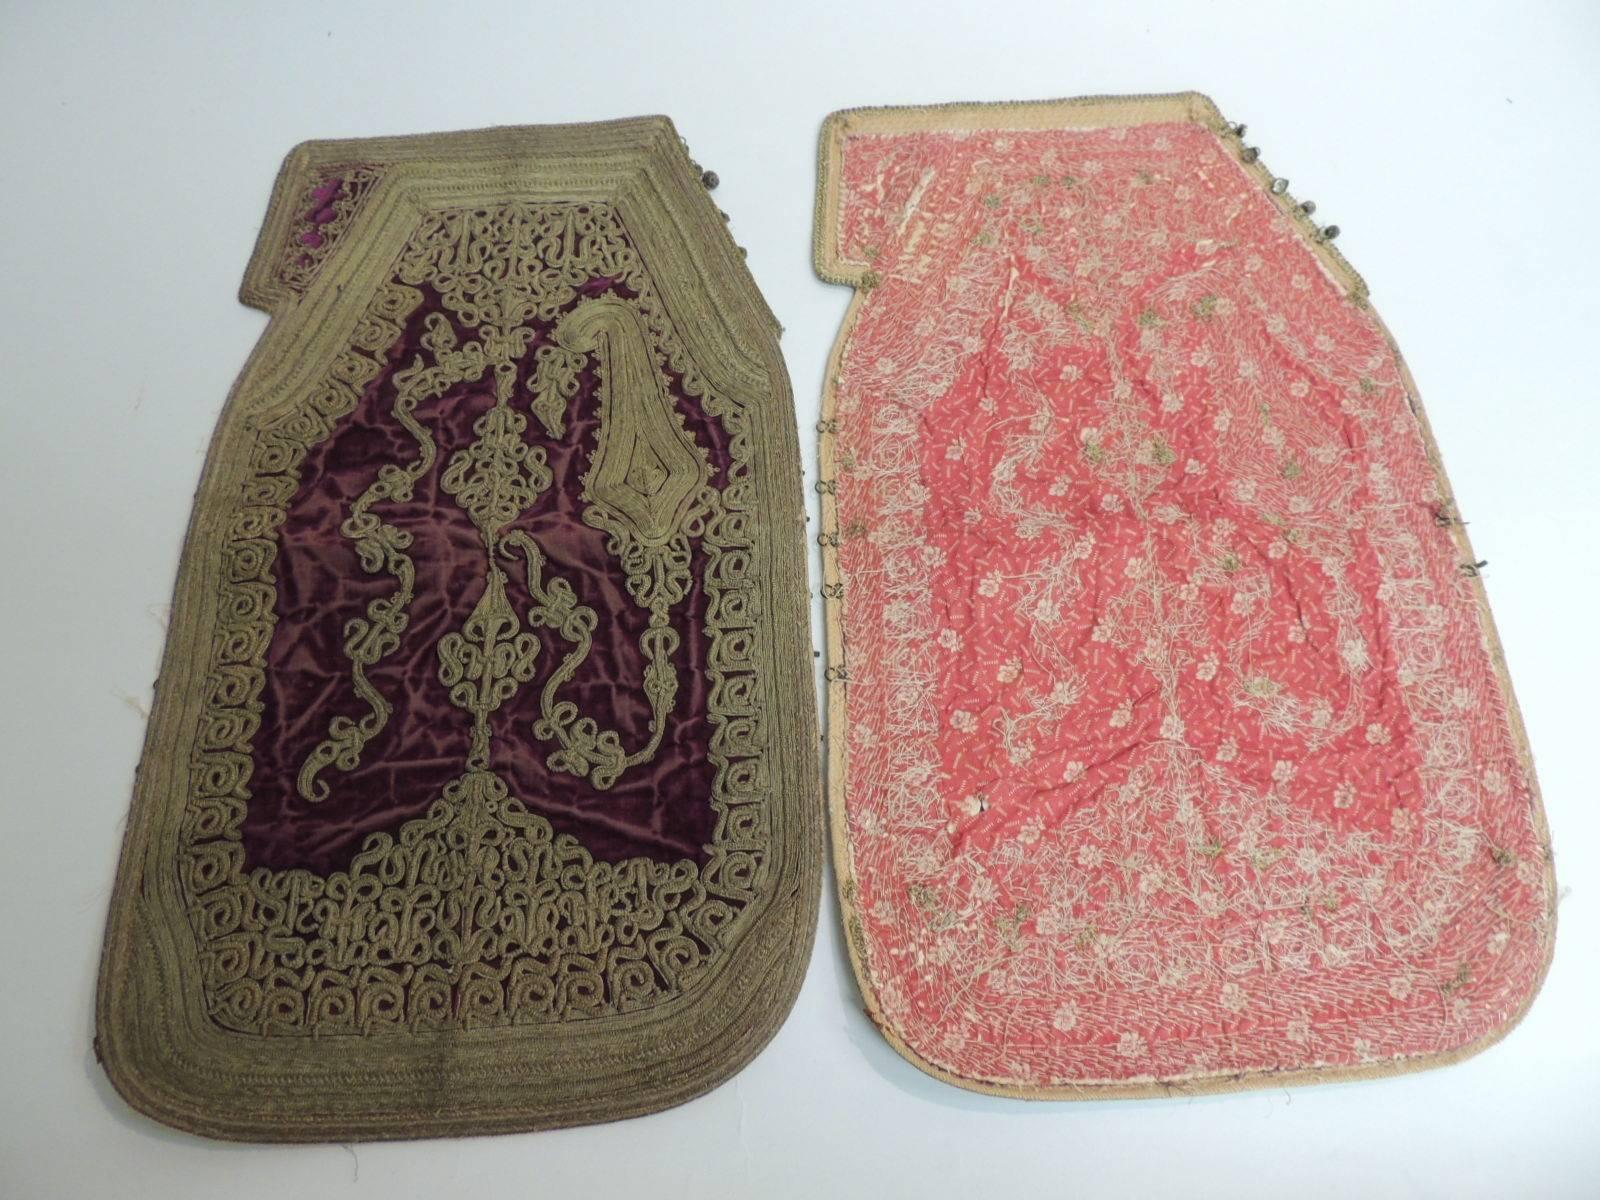 Moorish 18th Century Persian Embroidered Metallic Threads on Silk Velvet Vest Panels